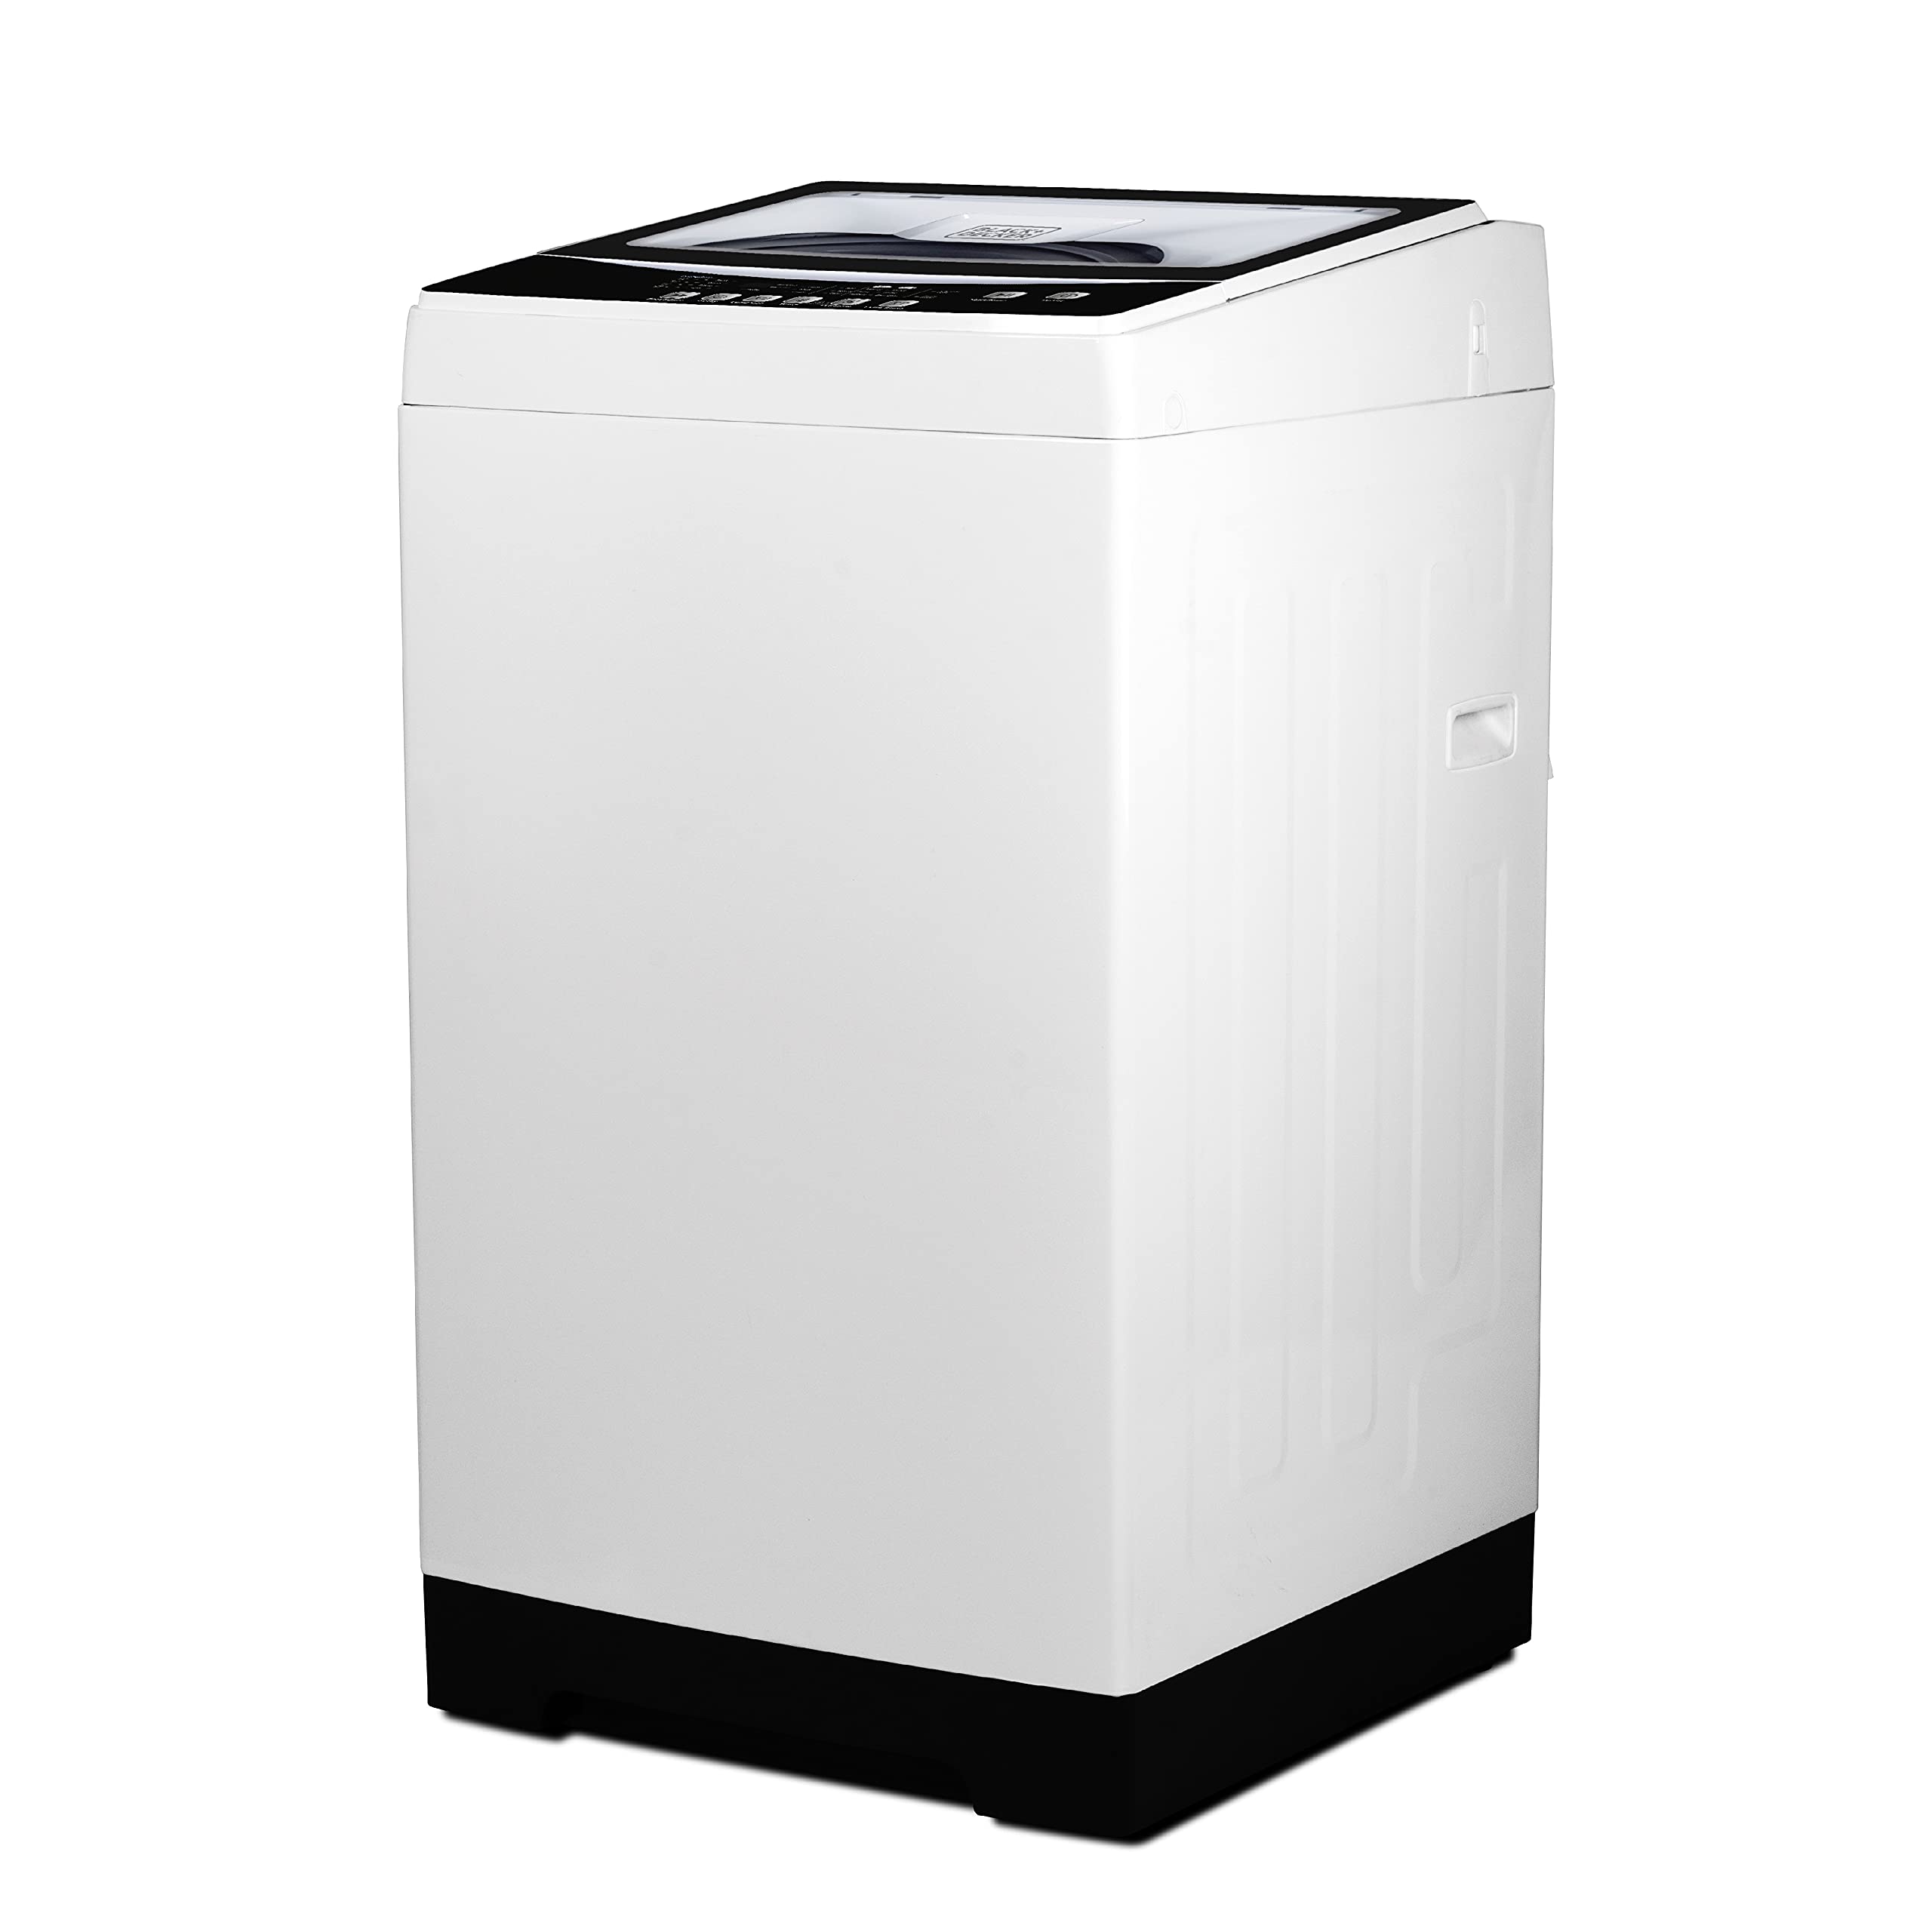 BLACK+DECKER 小型ポータブル洗濯機、家庭用洗濯機、ポータブル洗濯機 3.0Cu。フォート6サイクル、透明蓋、LEDディスプレイ付き